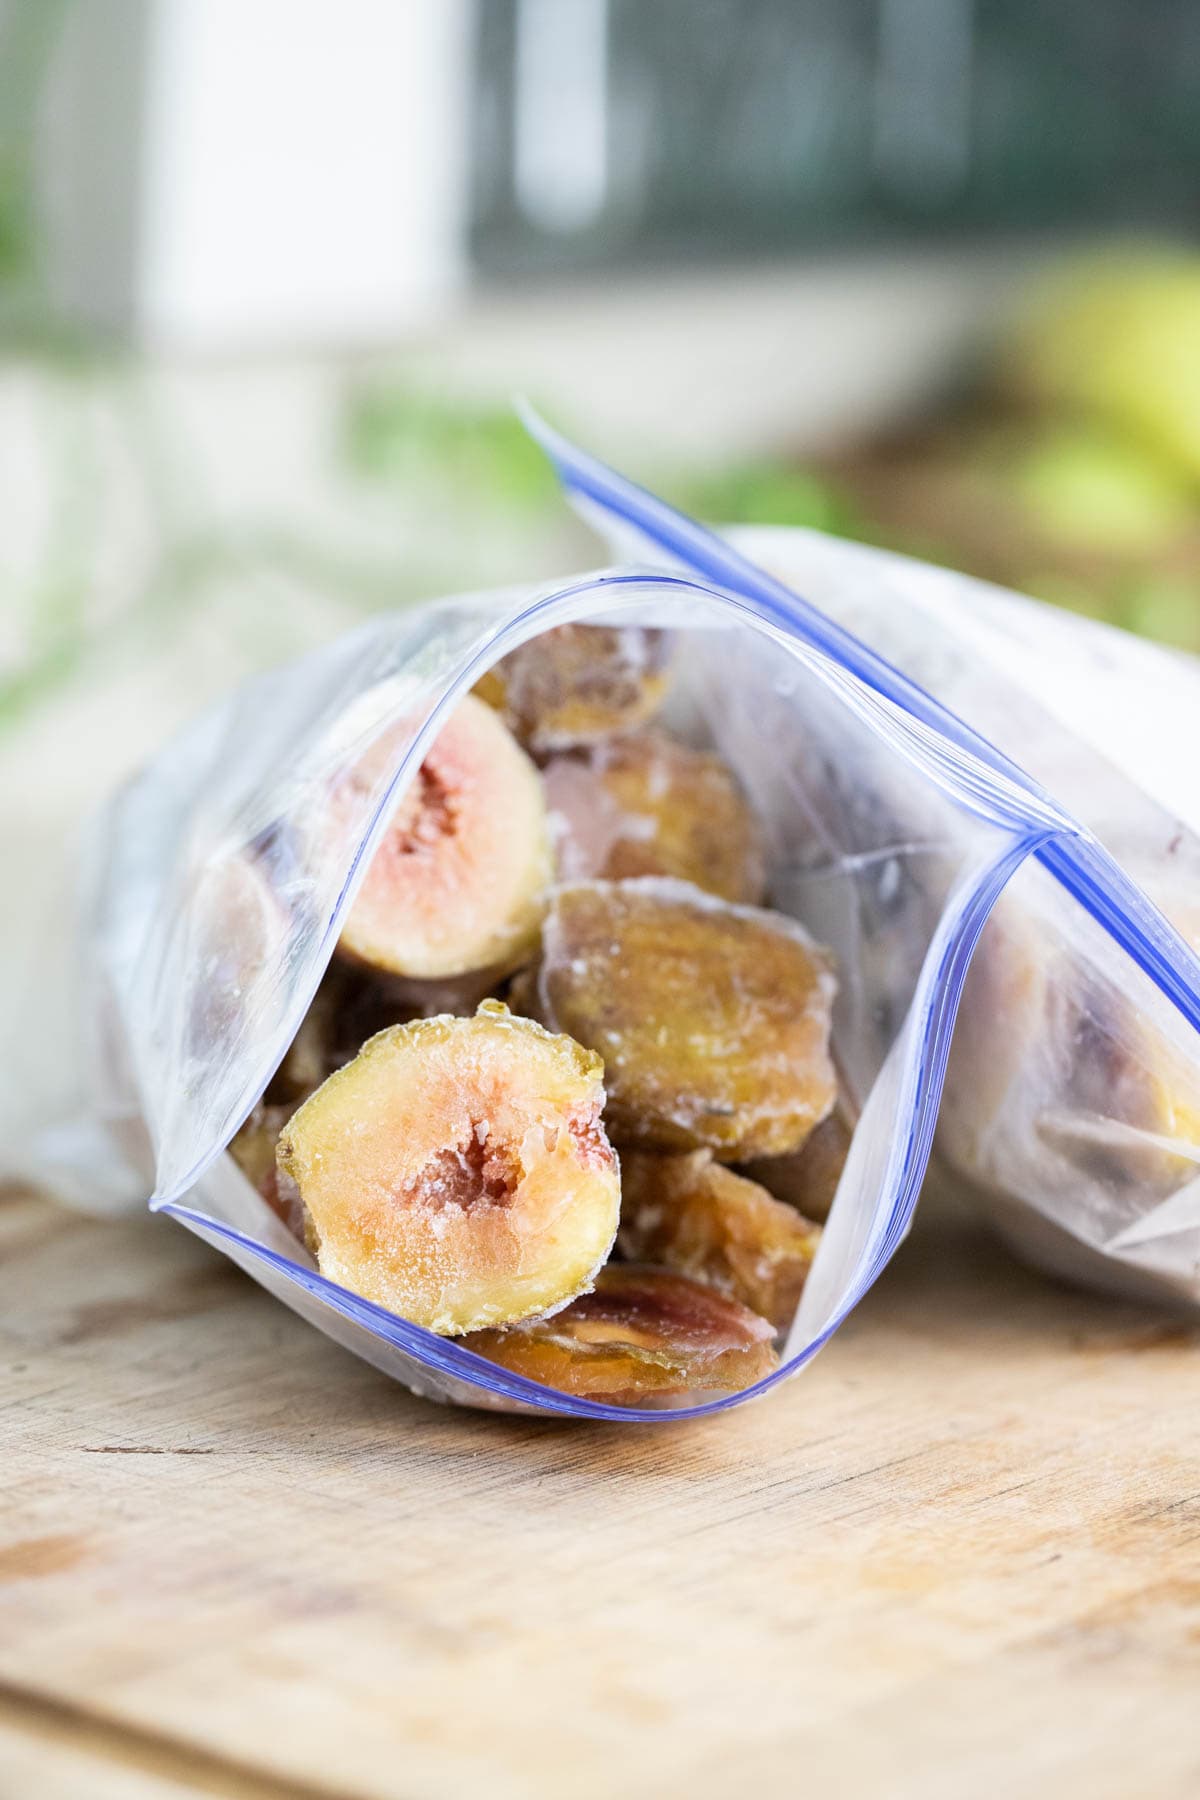 frozen figs in a freezer bag.